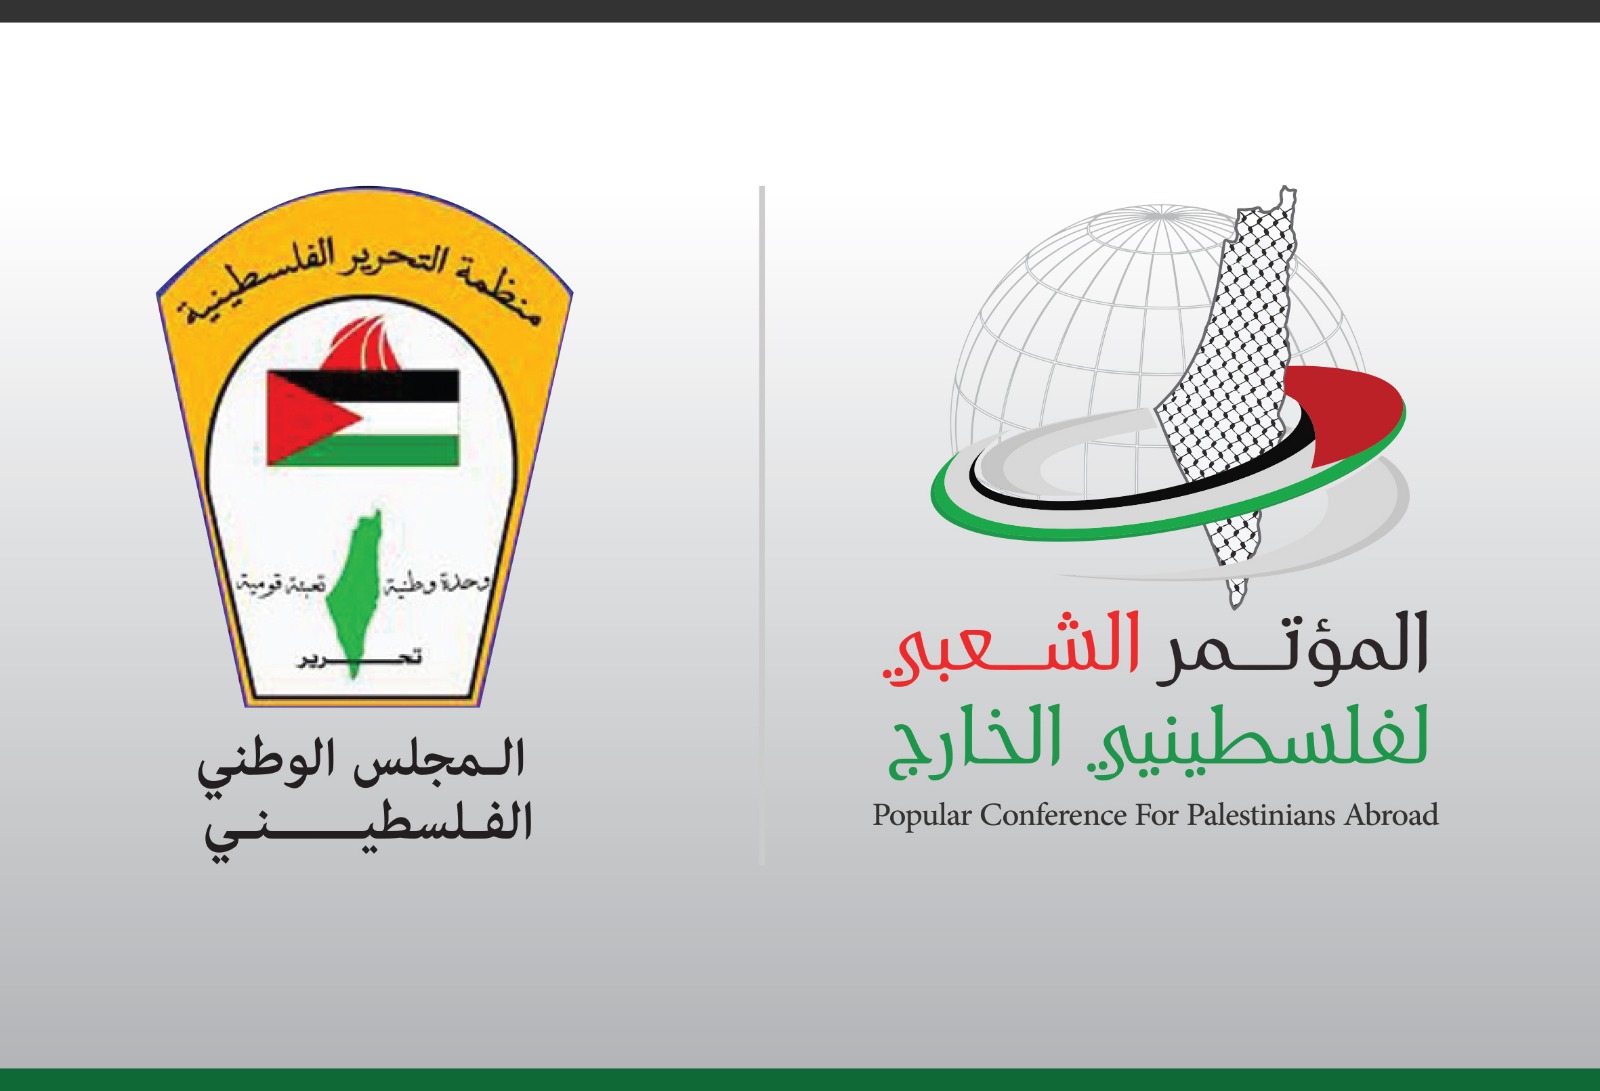 بيان صادر عن الهيئة العامة للمؤتمر الشعبي حول دعوة المجلس الوطني الفلسطيني للإنعقاد